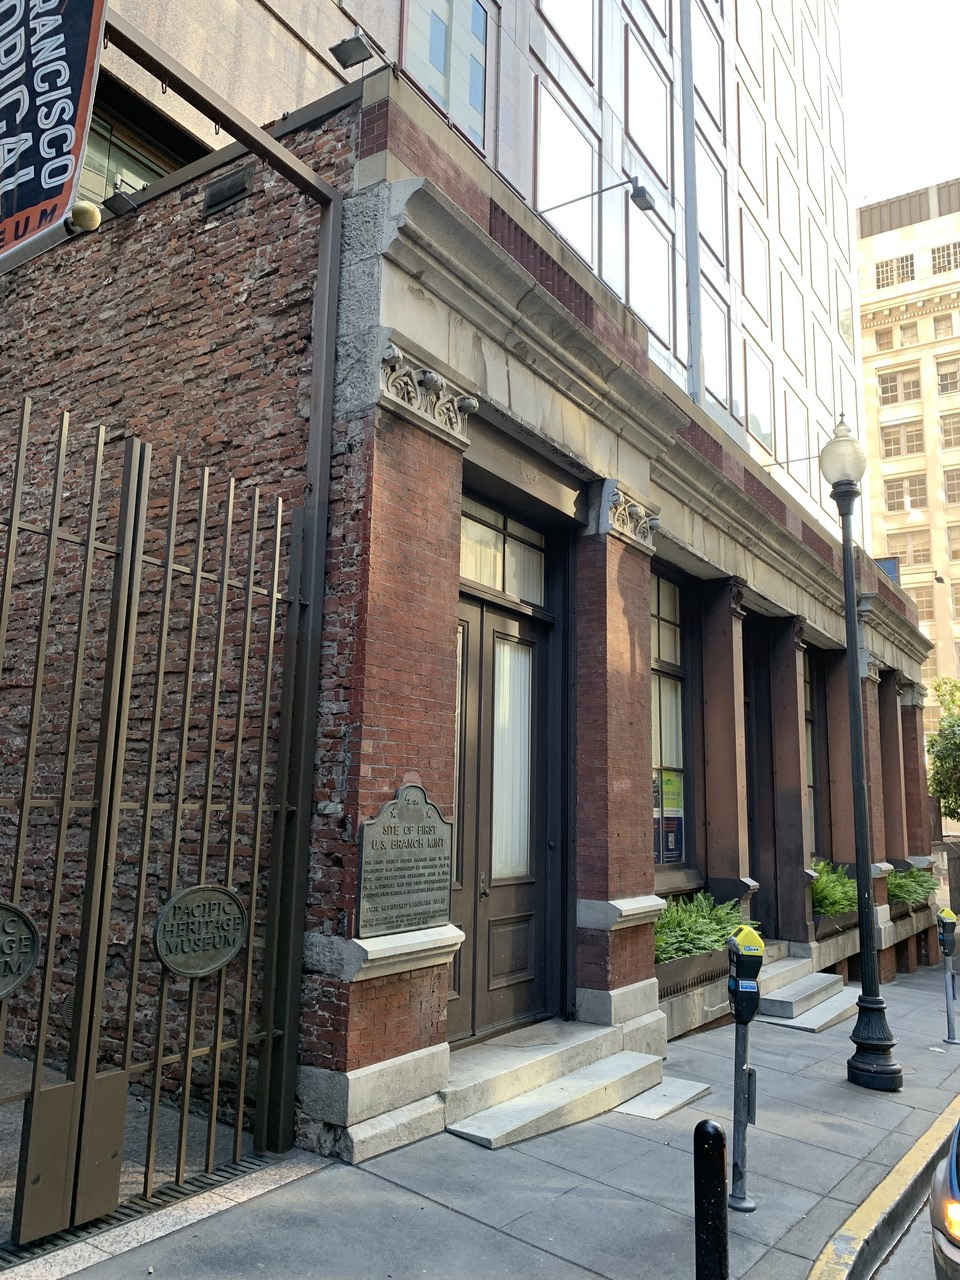 1854년 문을 연 최초의 샌프란시스코 조폐국 부지. 현재는 샌프란시스코 히스토리컬 소사이어티(San Francisco Historical Society)에서 박물관으로 사용하고 있다.